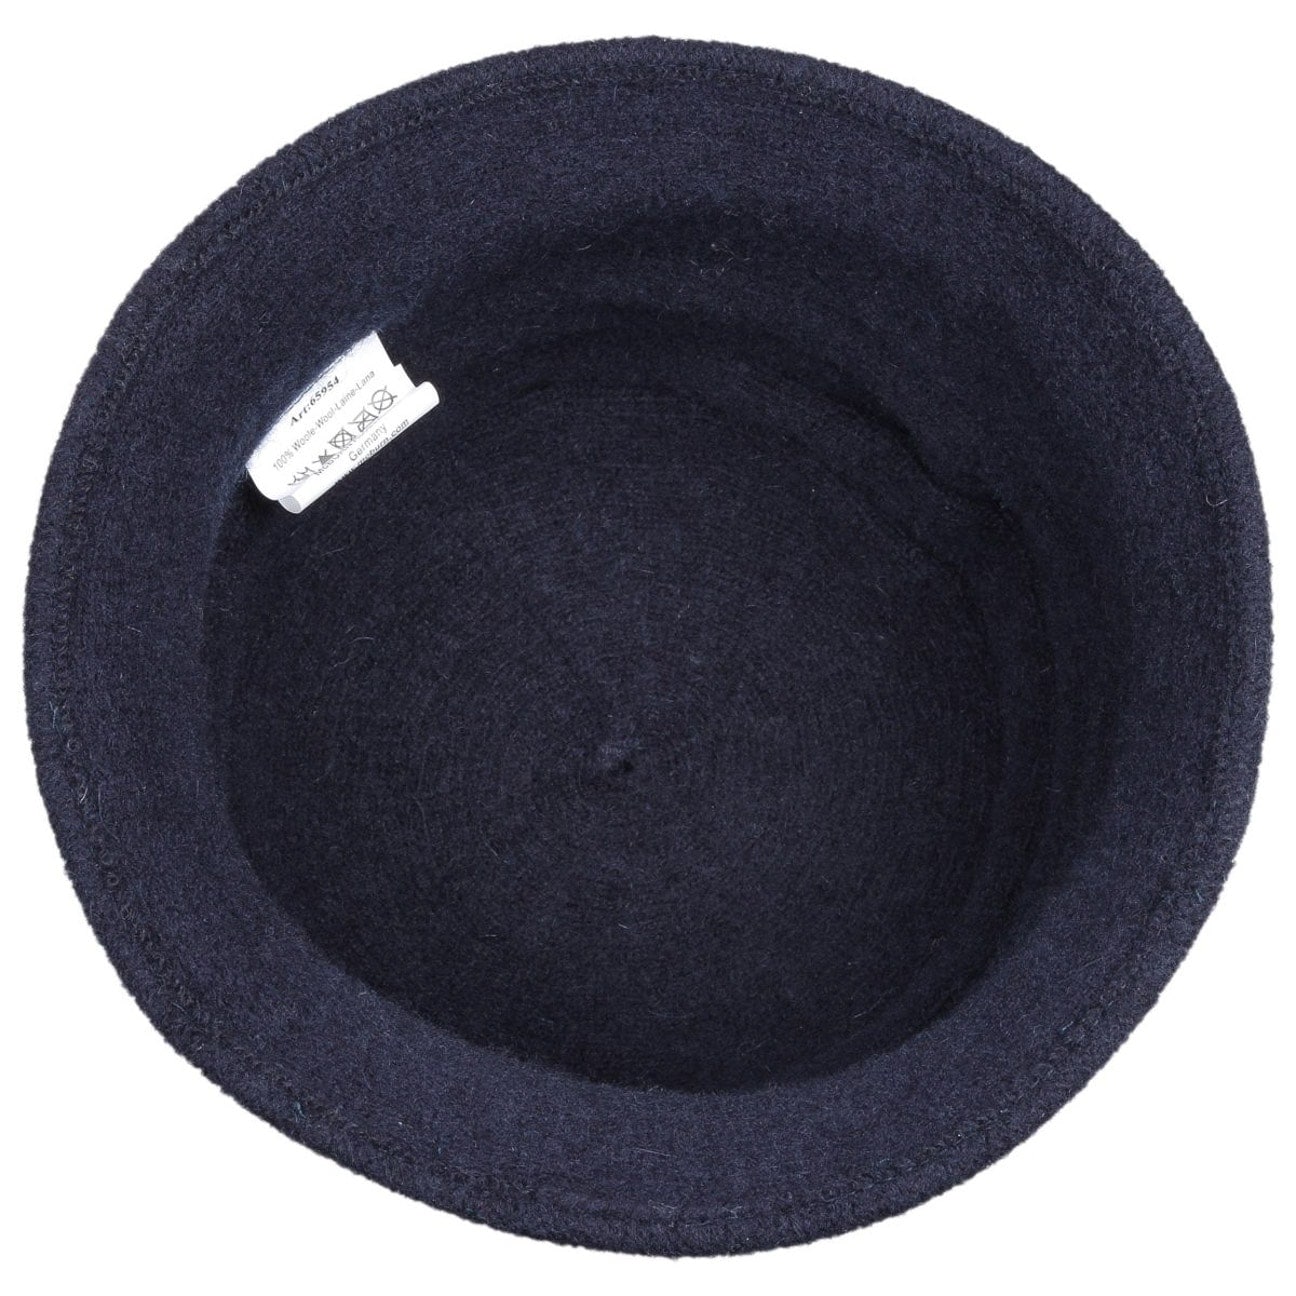 Talla única Sombrero de Fieltro para niños 942-B Color Negro Dress up America 